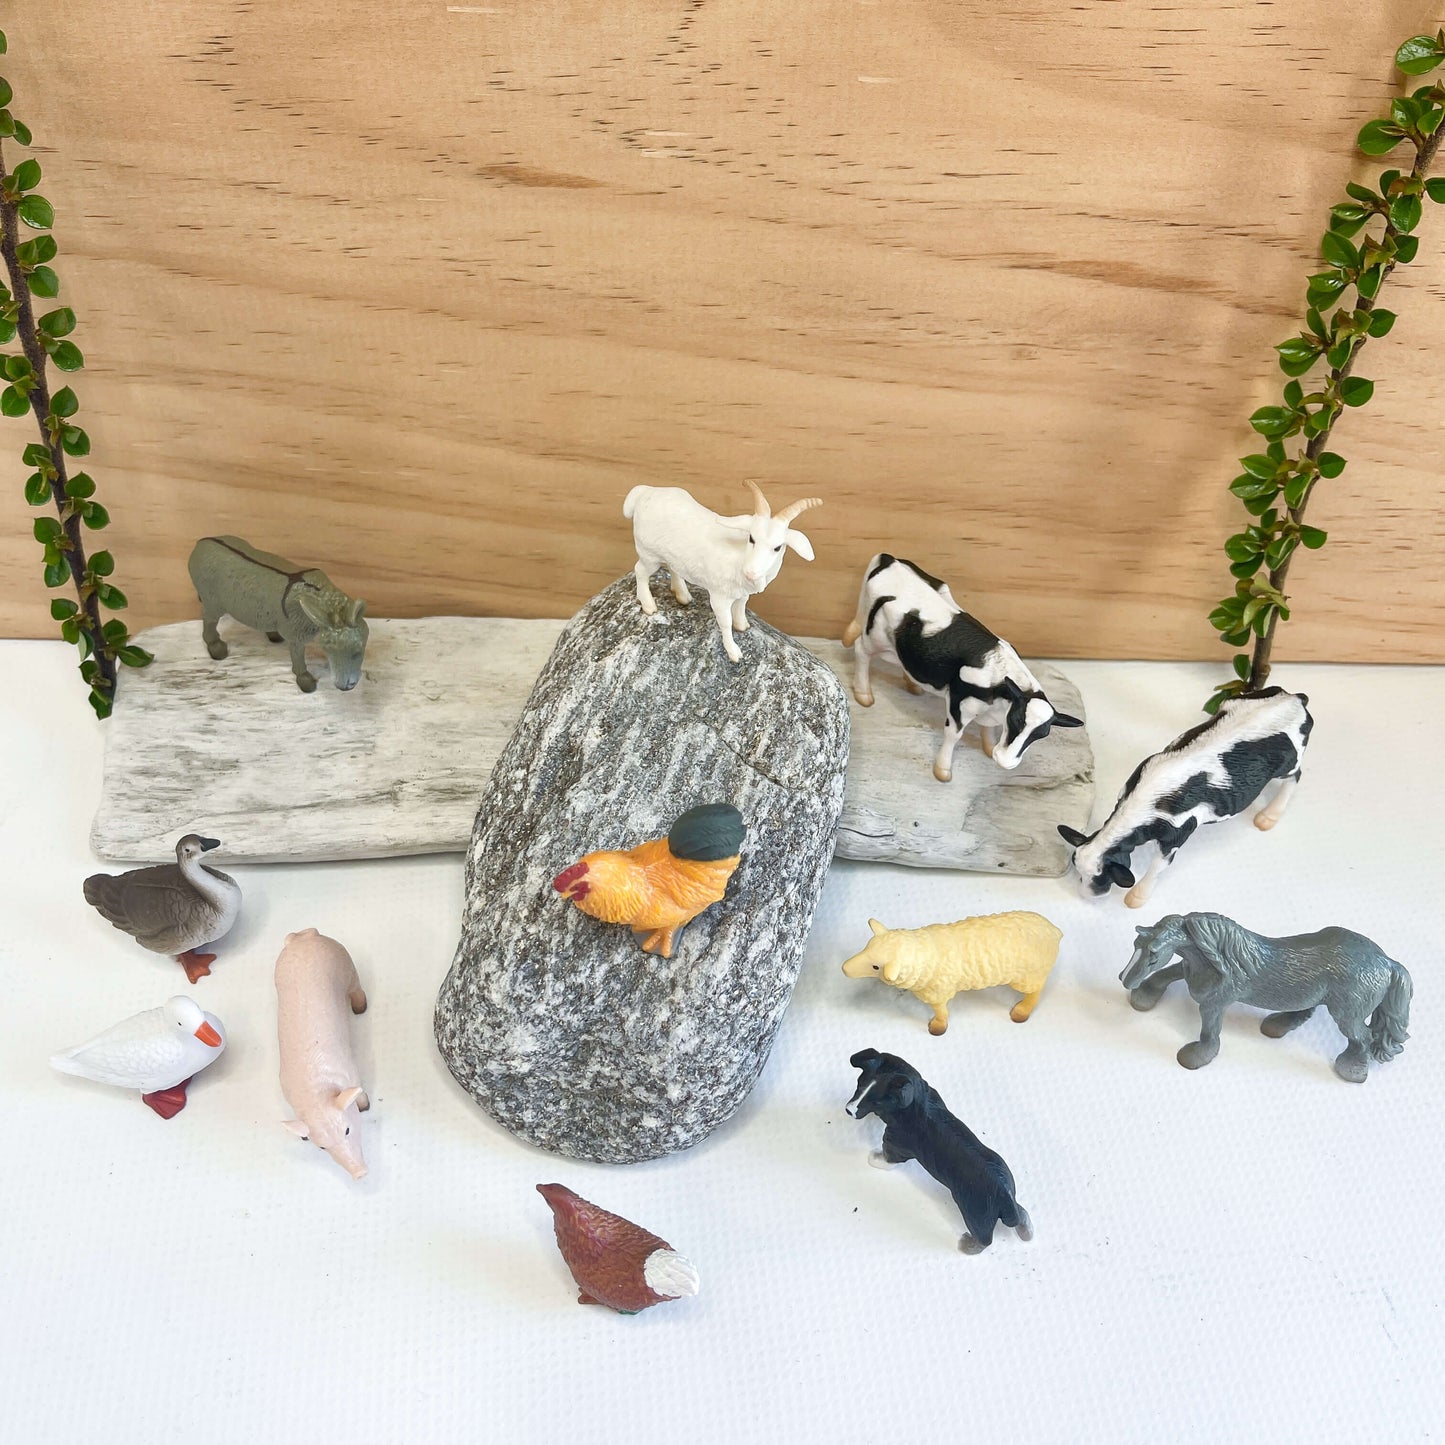 Farm animal figurines.